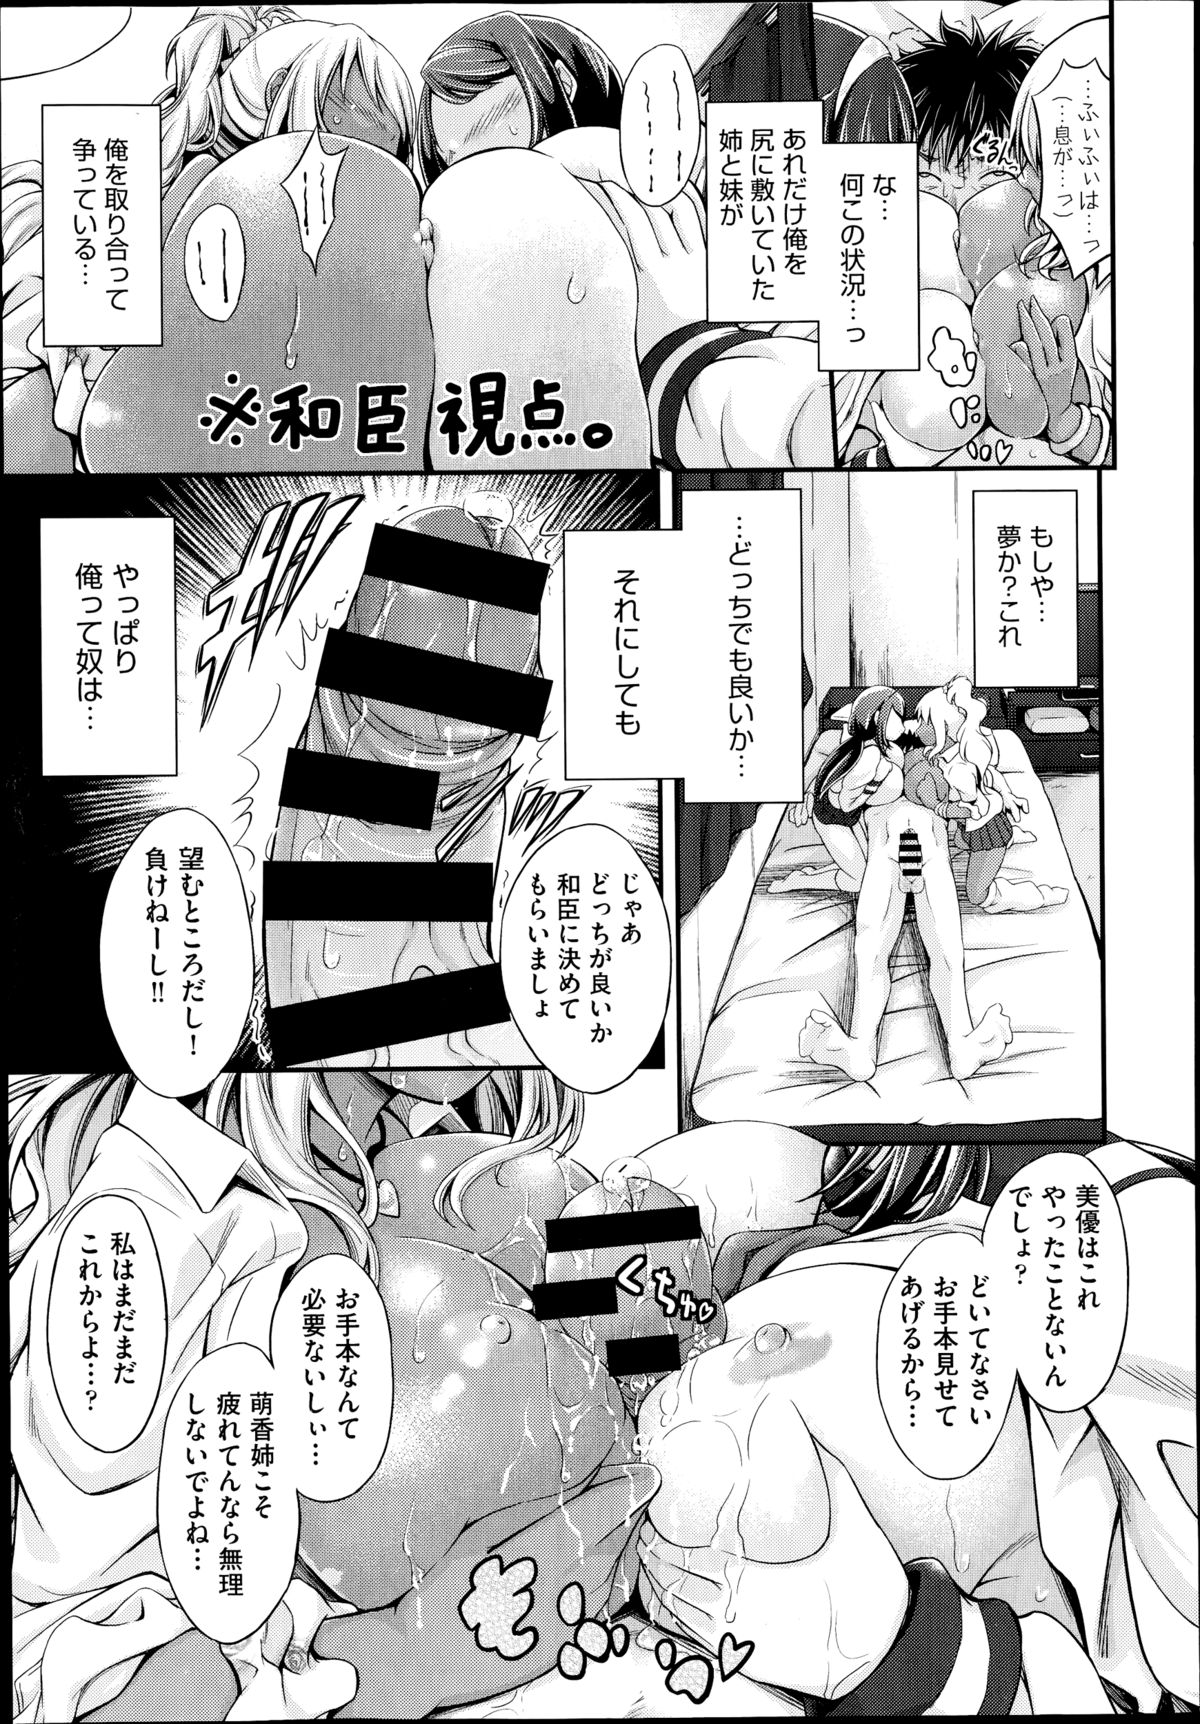 [Kimura Neito] Watashi wa kore de kazoku to nakayoku narimashita. Ch.1-2 page 43 full